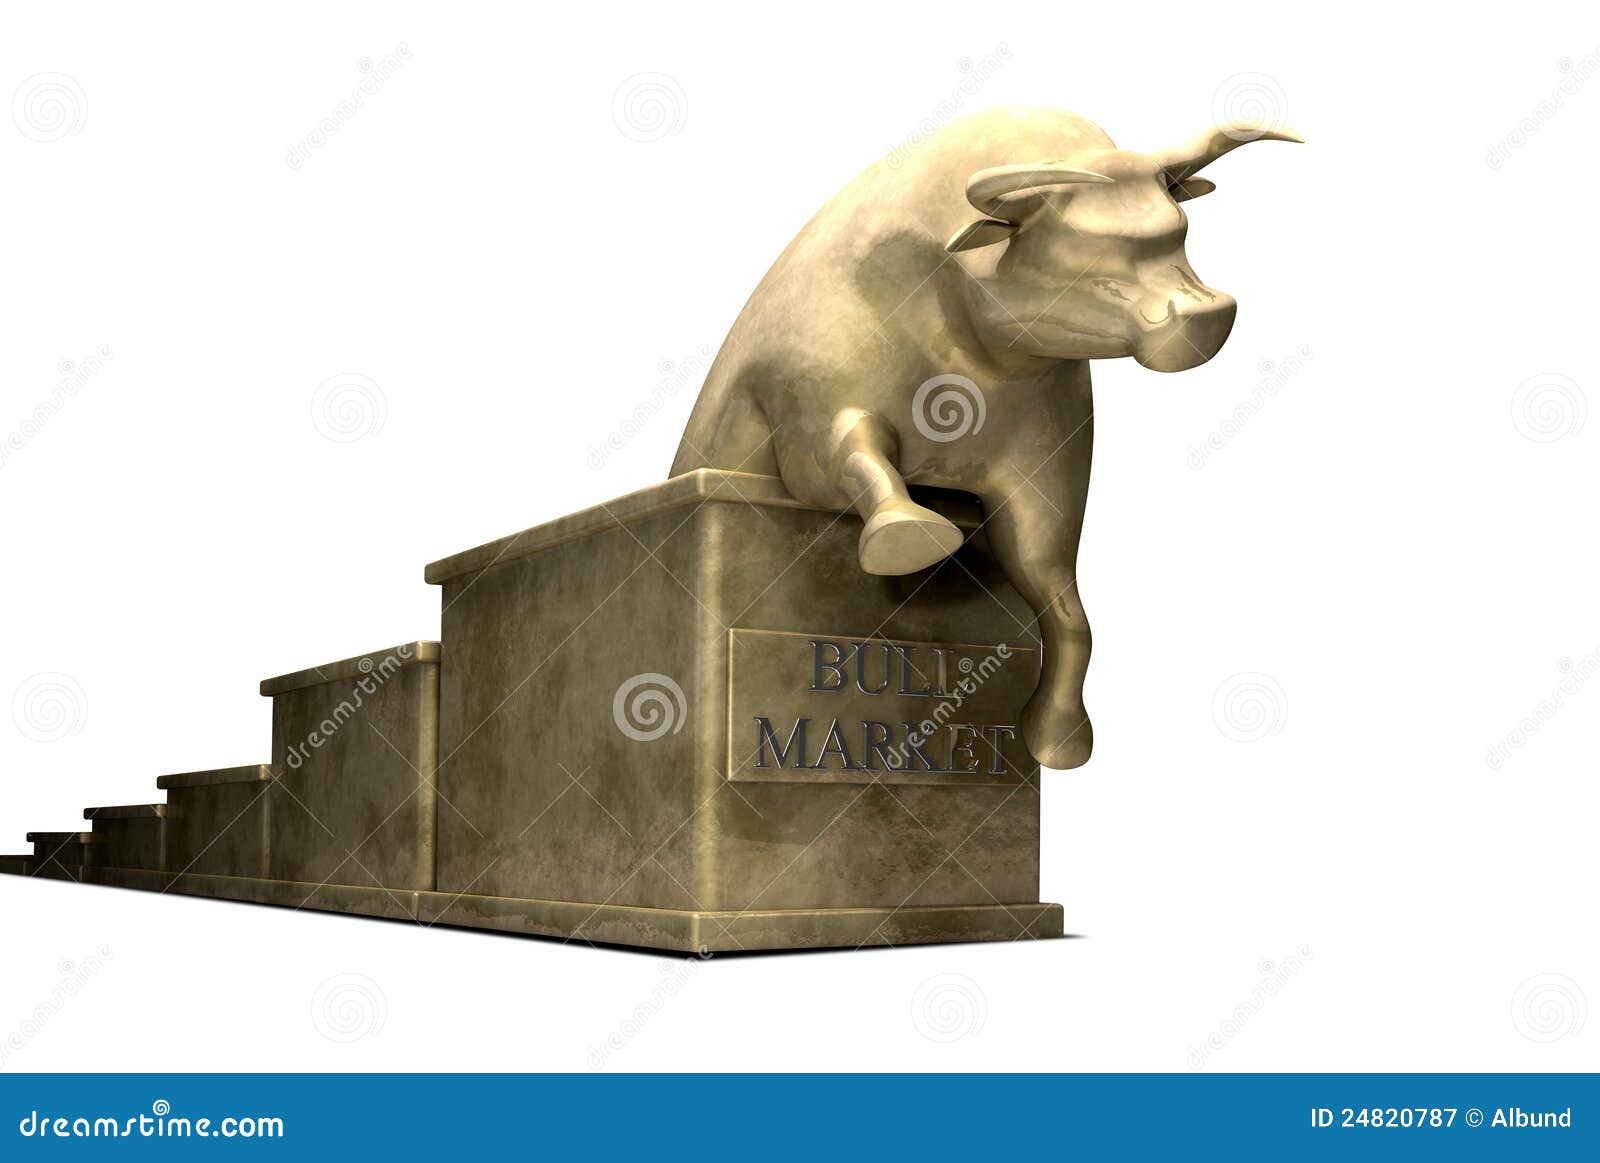 тенденция рынка золота бросания быка. бык бросил рынок диаграммы золота конца живописания вытекая буквальный показывая статуэтки отклоняя типичное верхнее